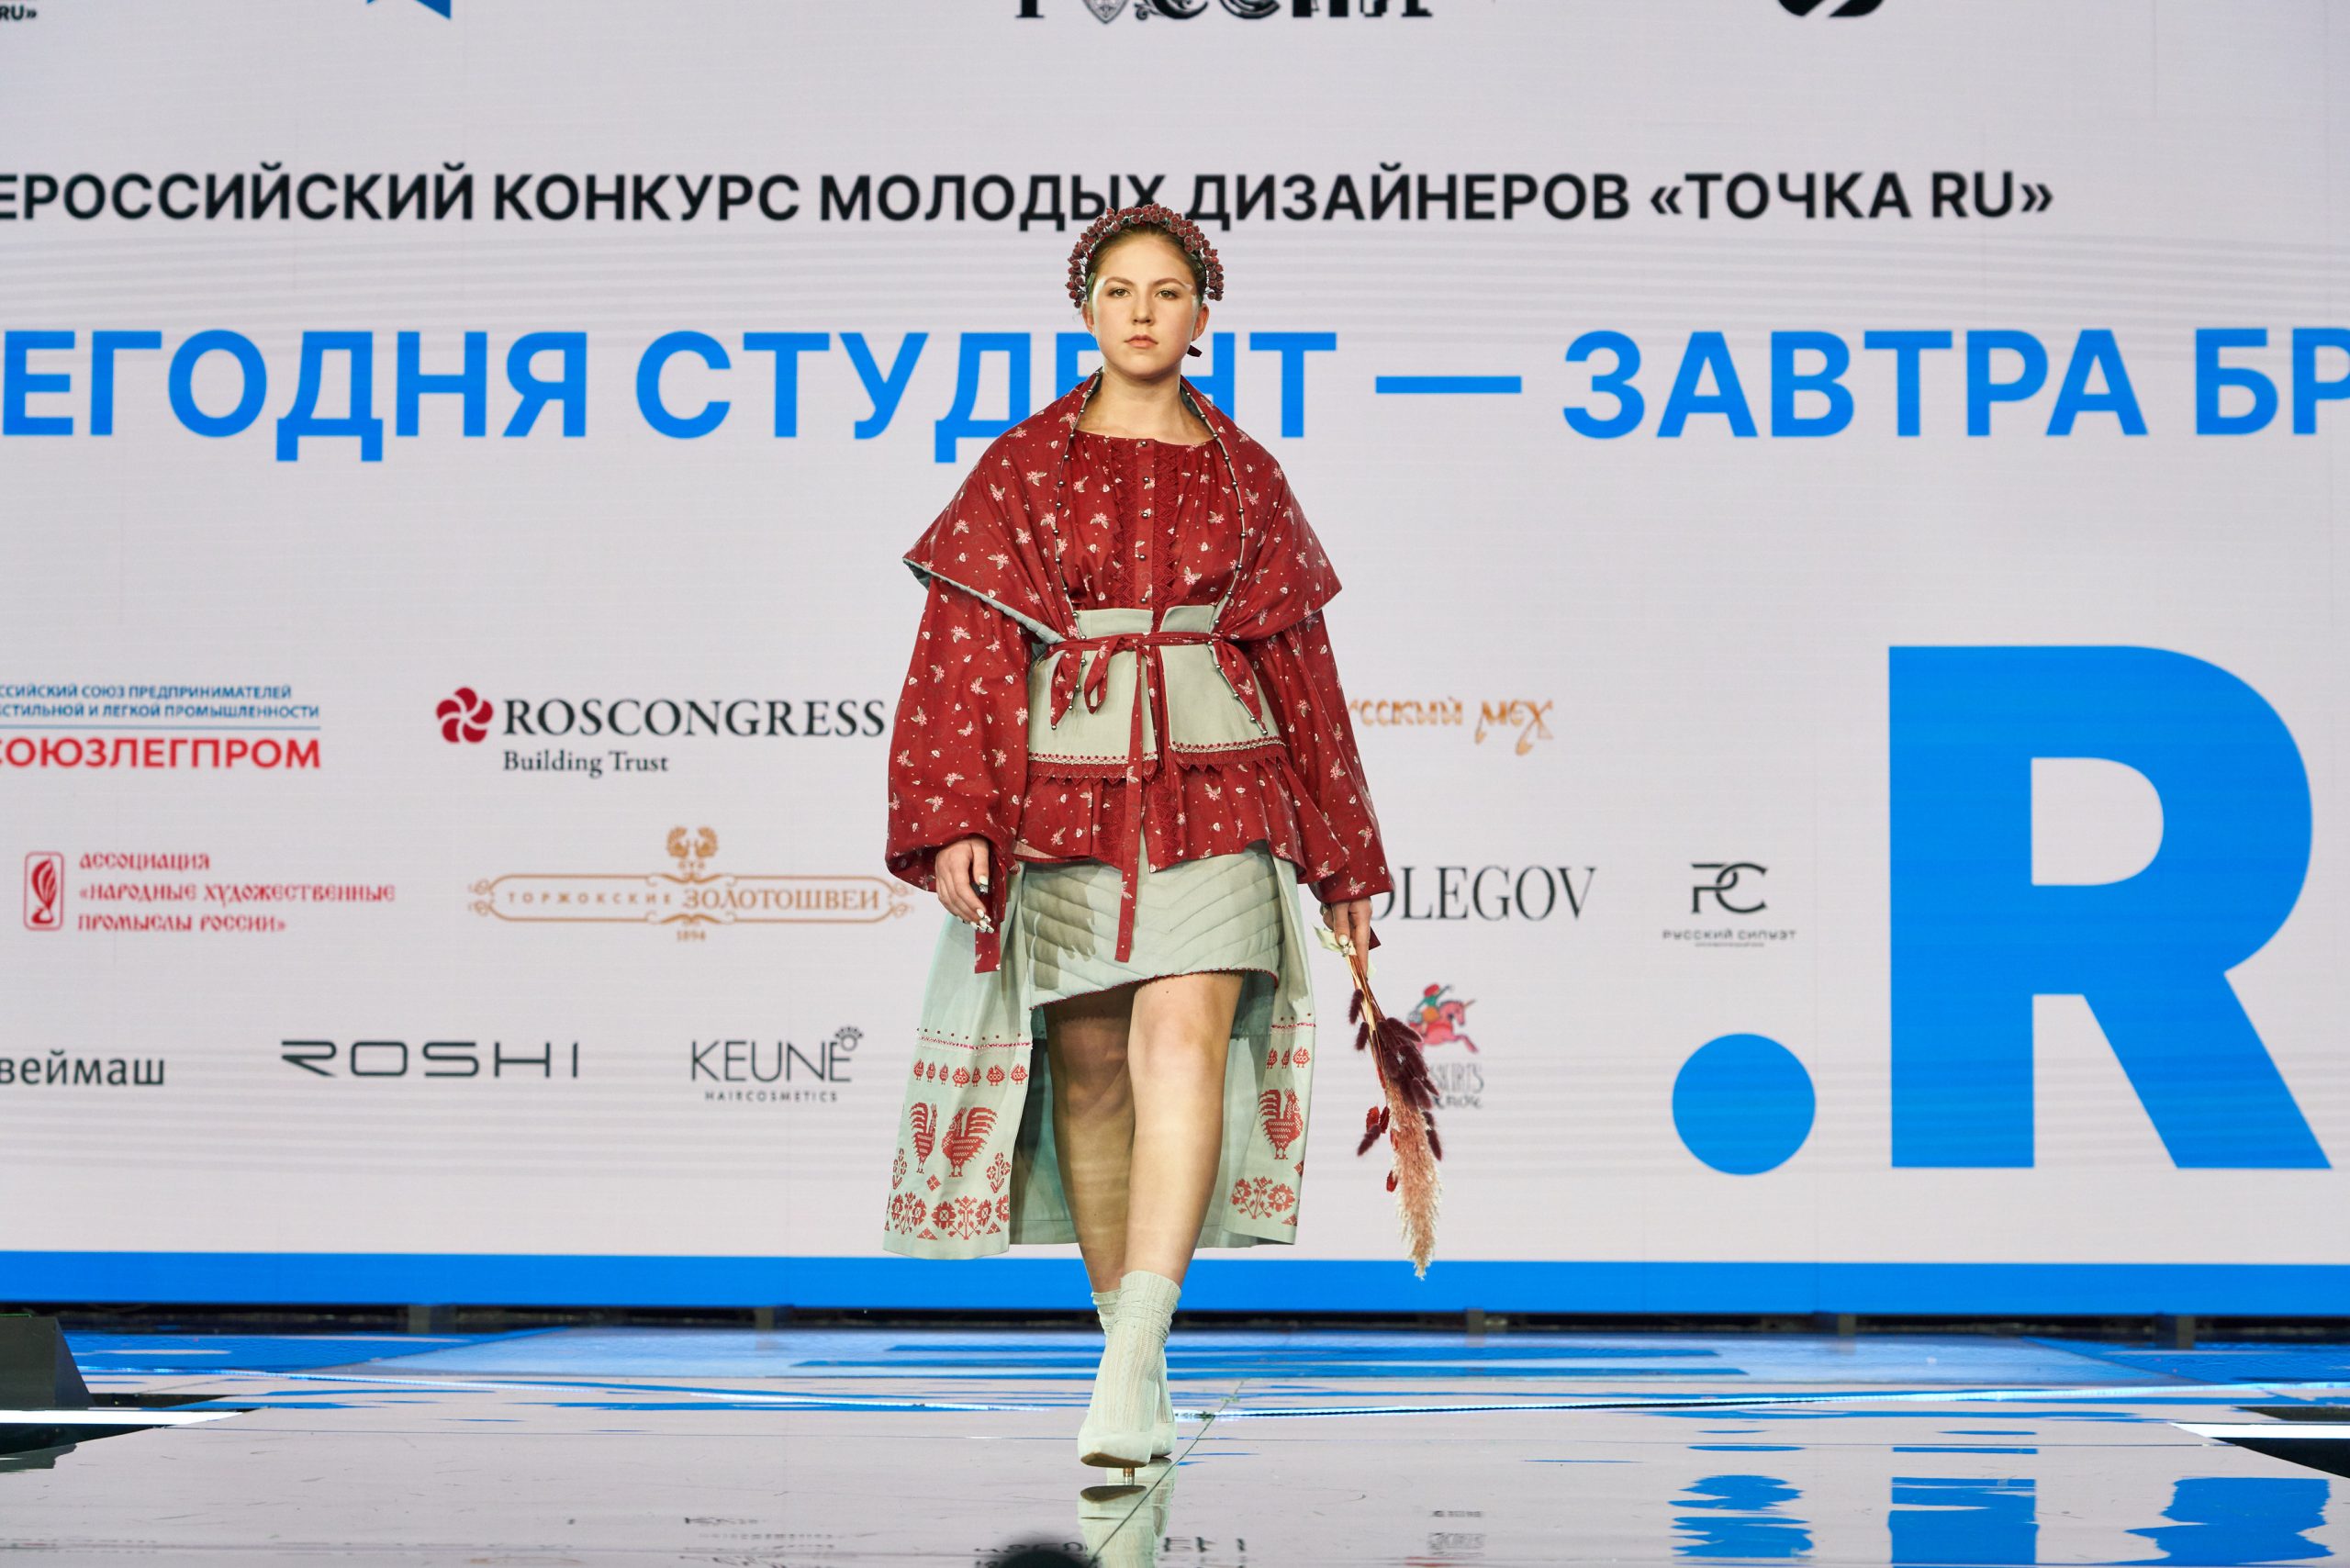 Фестиваль дизайна от РГУ имени Алексея Косыгина завершился в Москве